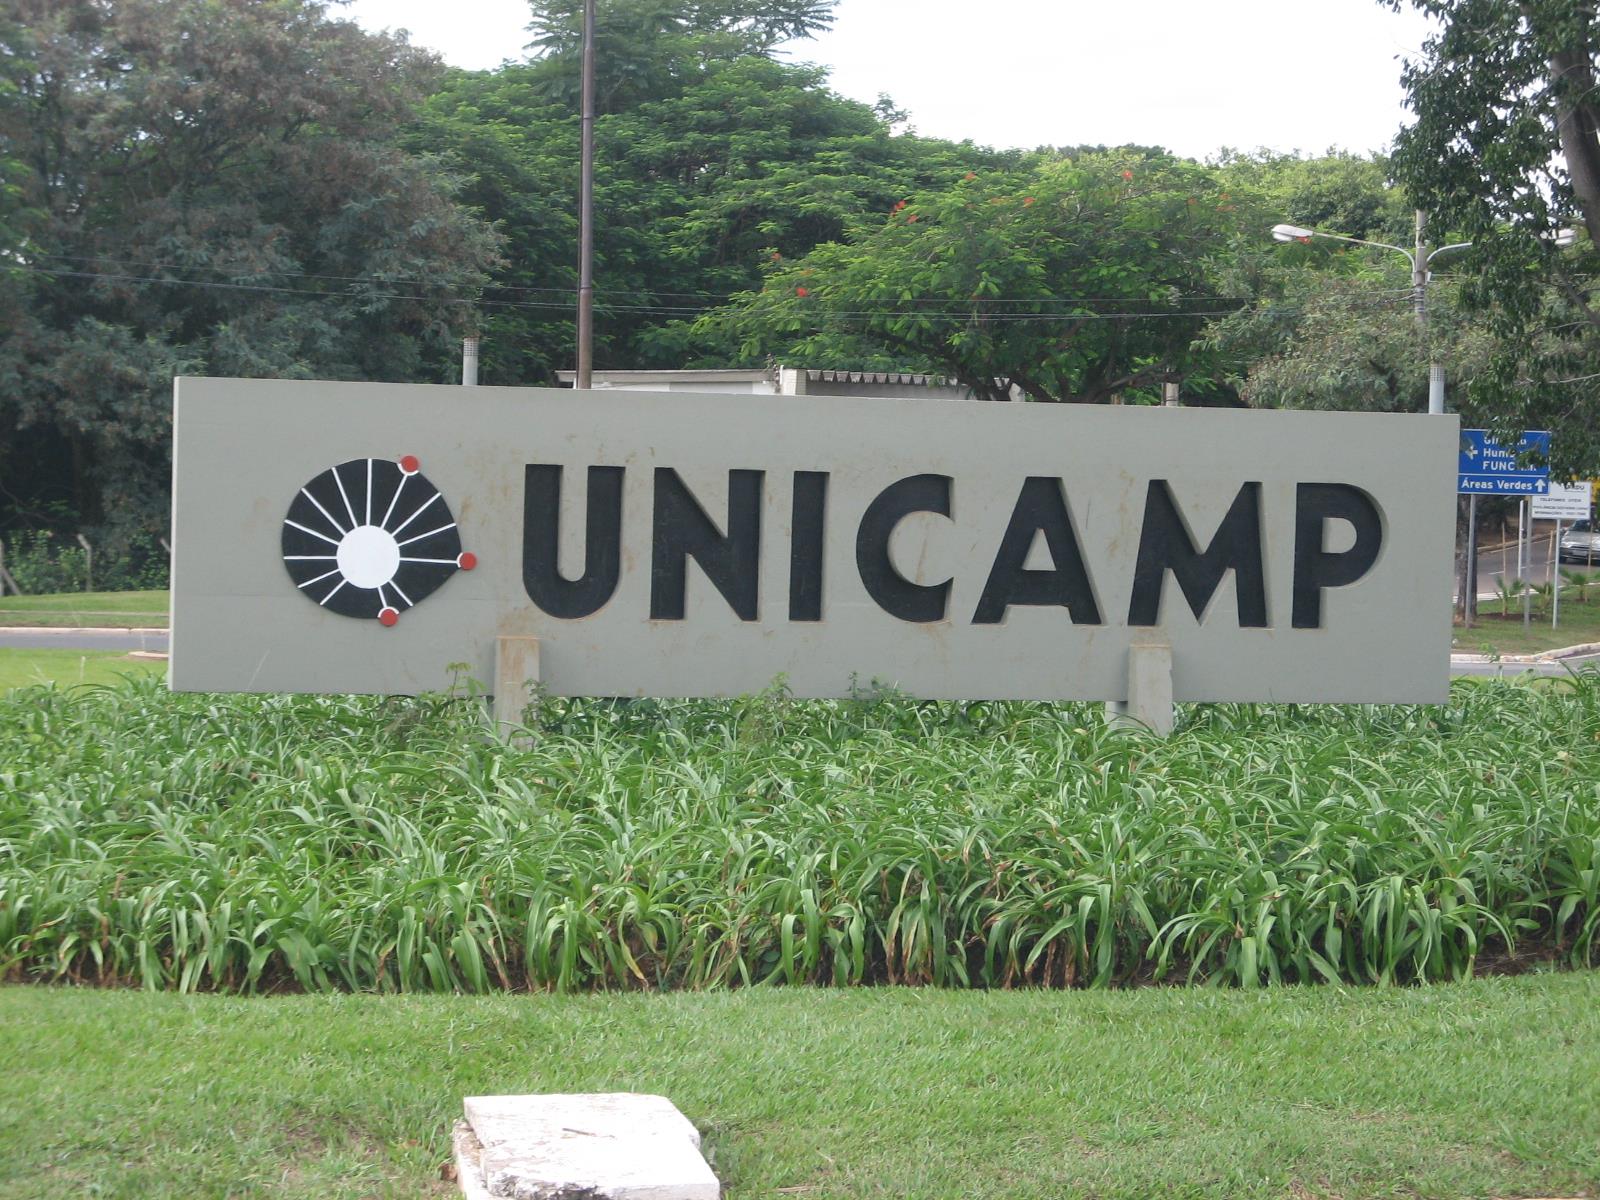 Criada por decreto-lei em 1962, a Unicamp surgiu como um centro estratégico para